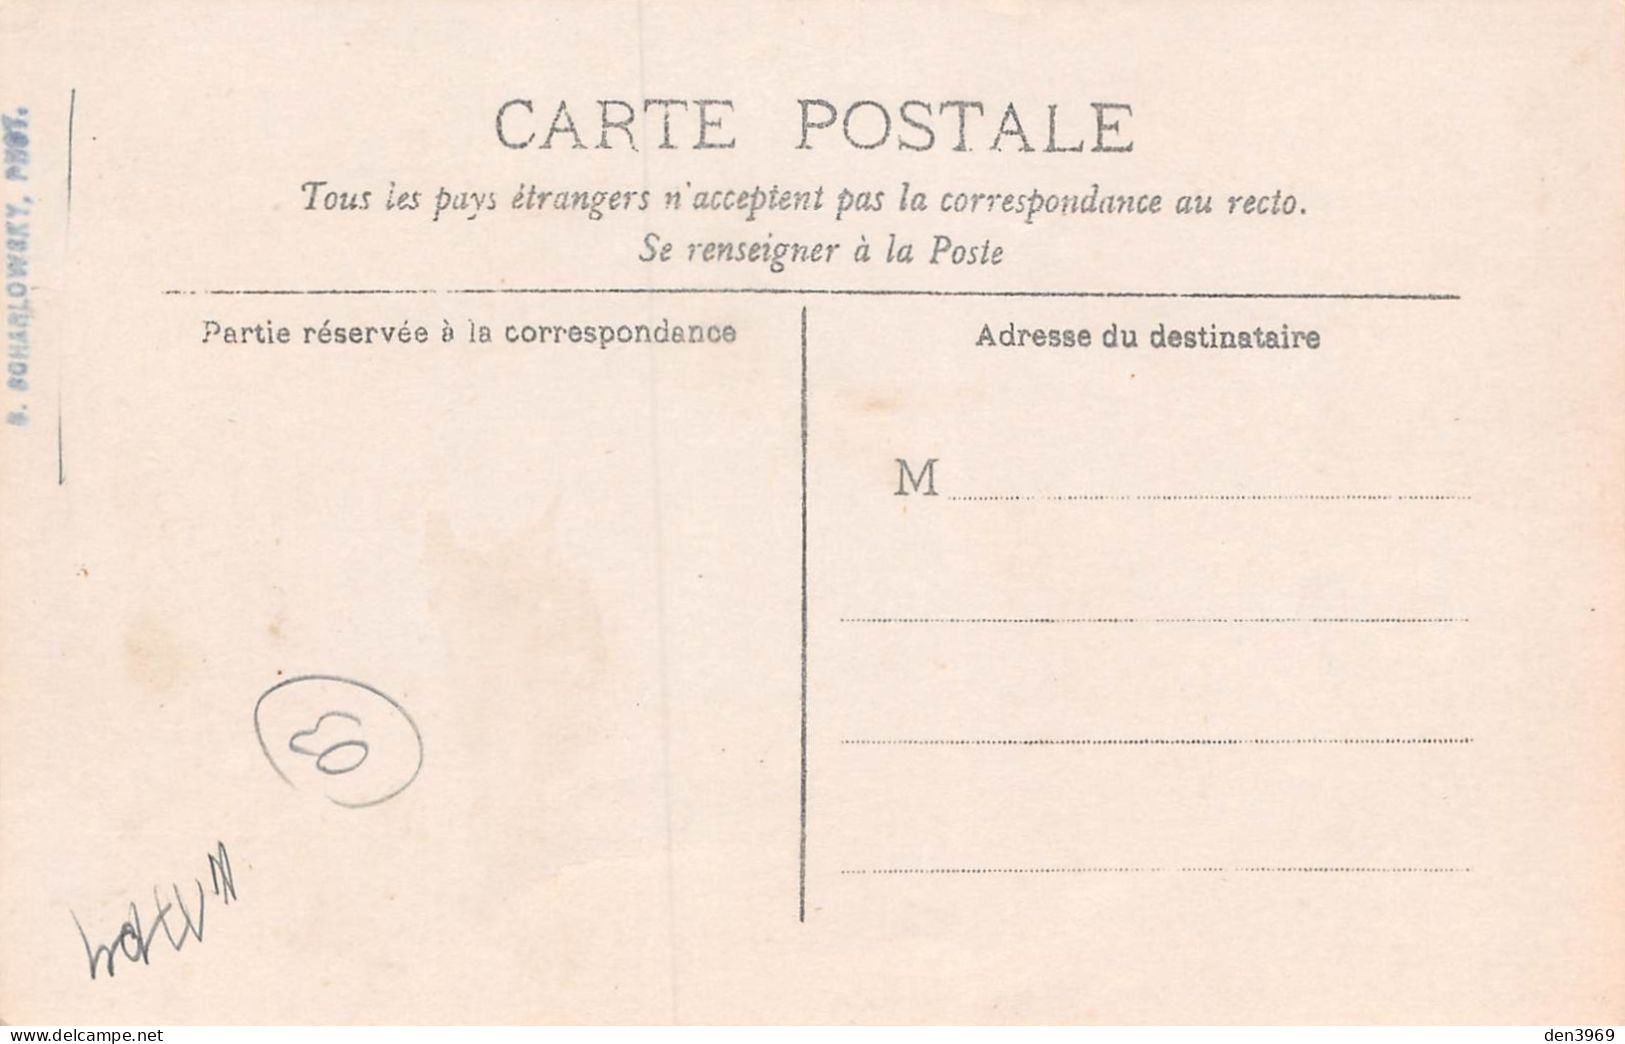 MOULINS (Allier) - Obsèques Du Sergent Nugier Tué Au Maroc, 29/3/1908 - Publicité Chocolat Menier - Carte-Photo - Moulins